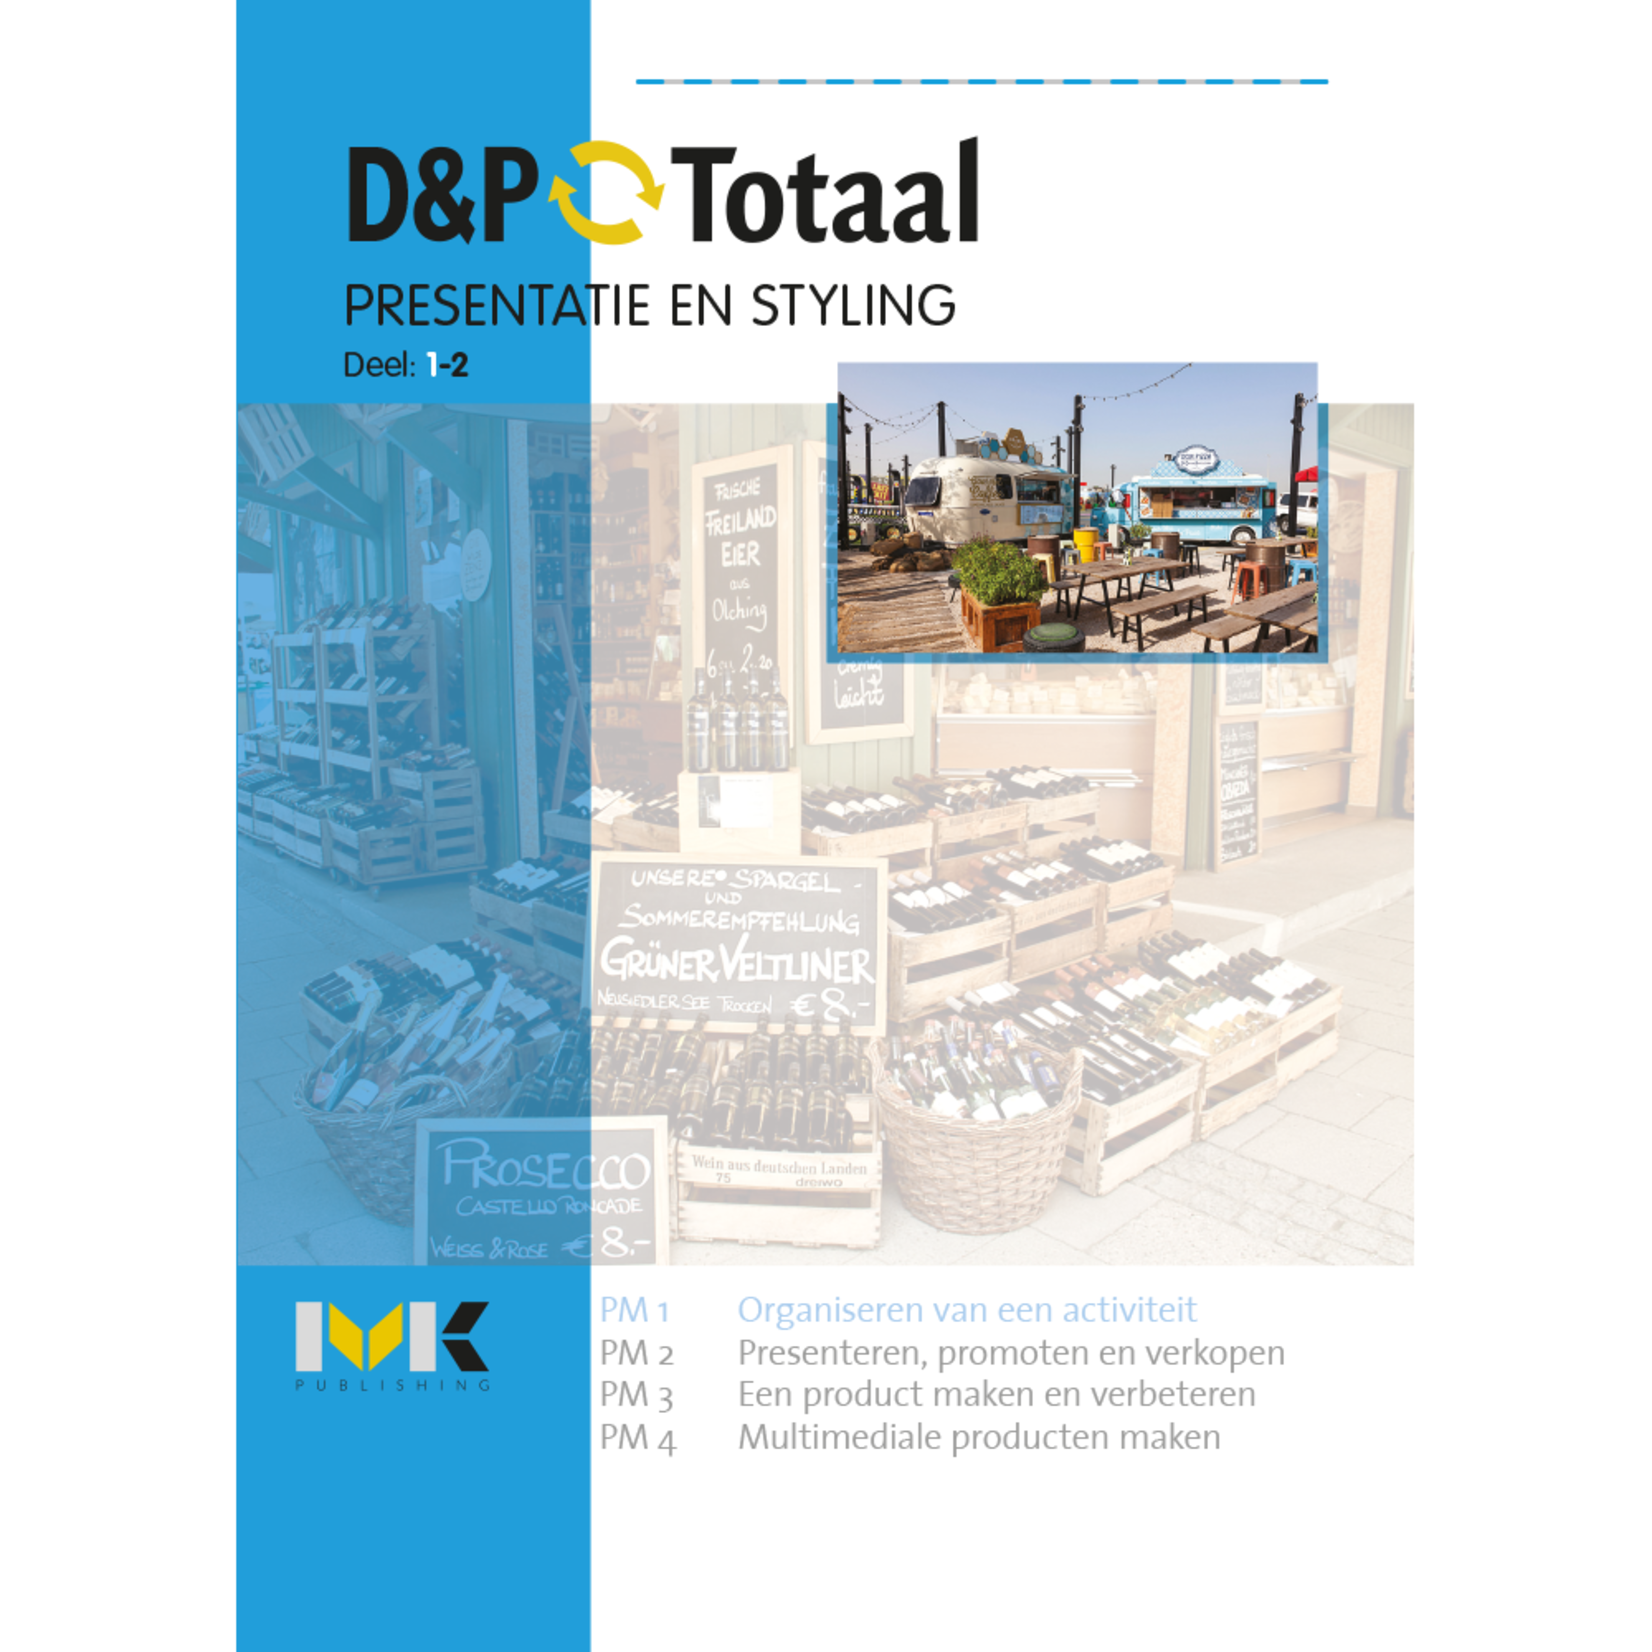 D&P-Totaal - E&O Presentatie en styling (PM1/1718)